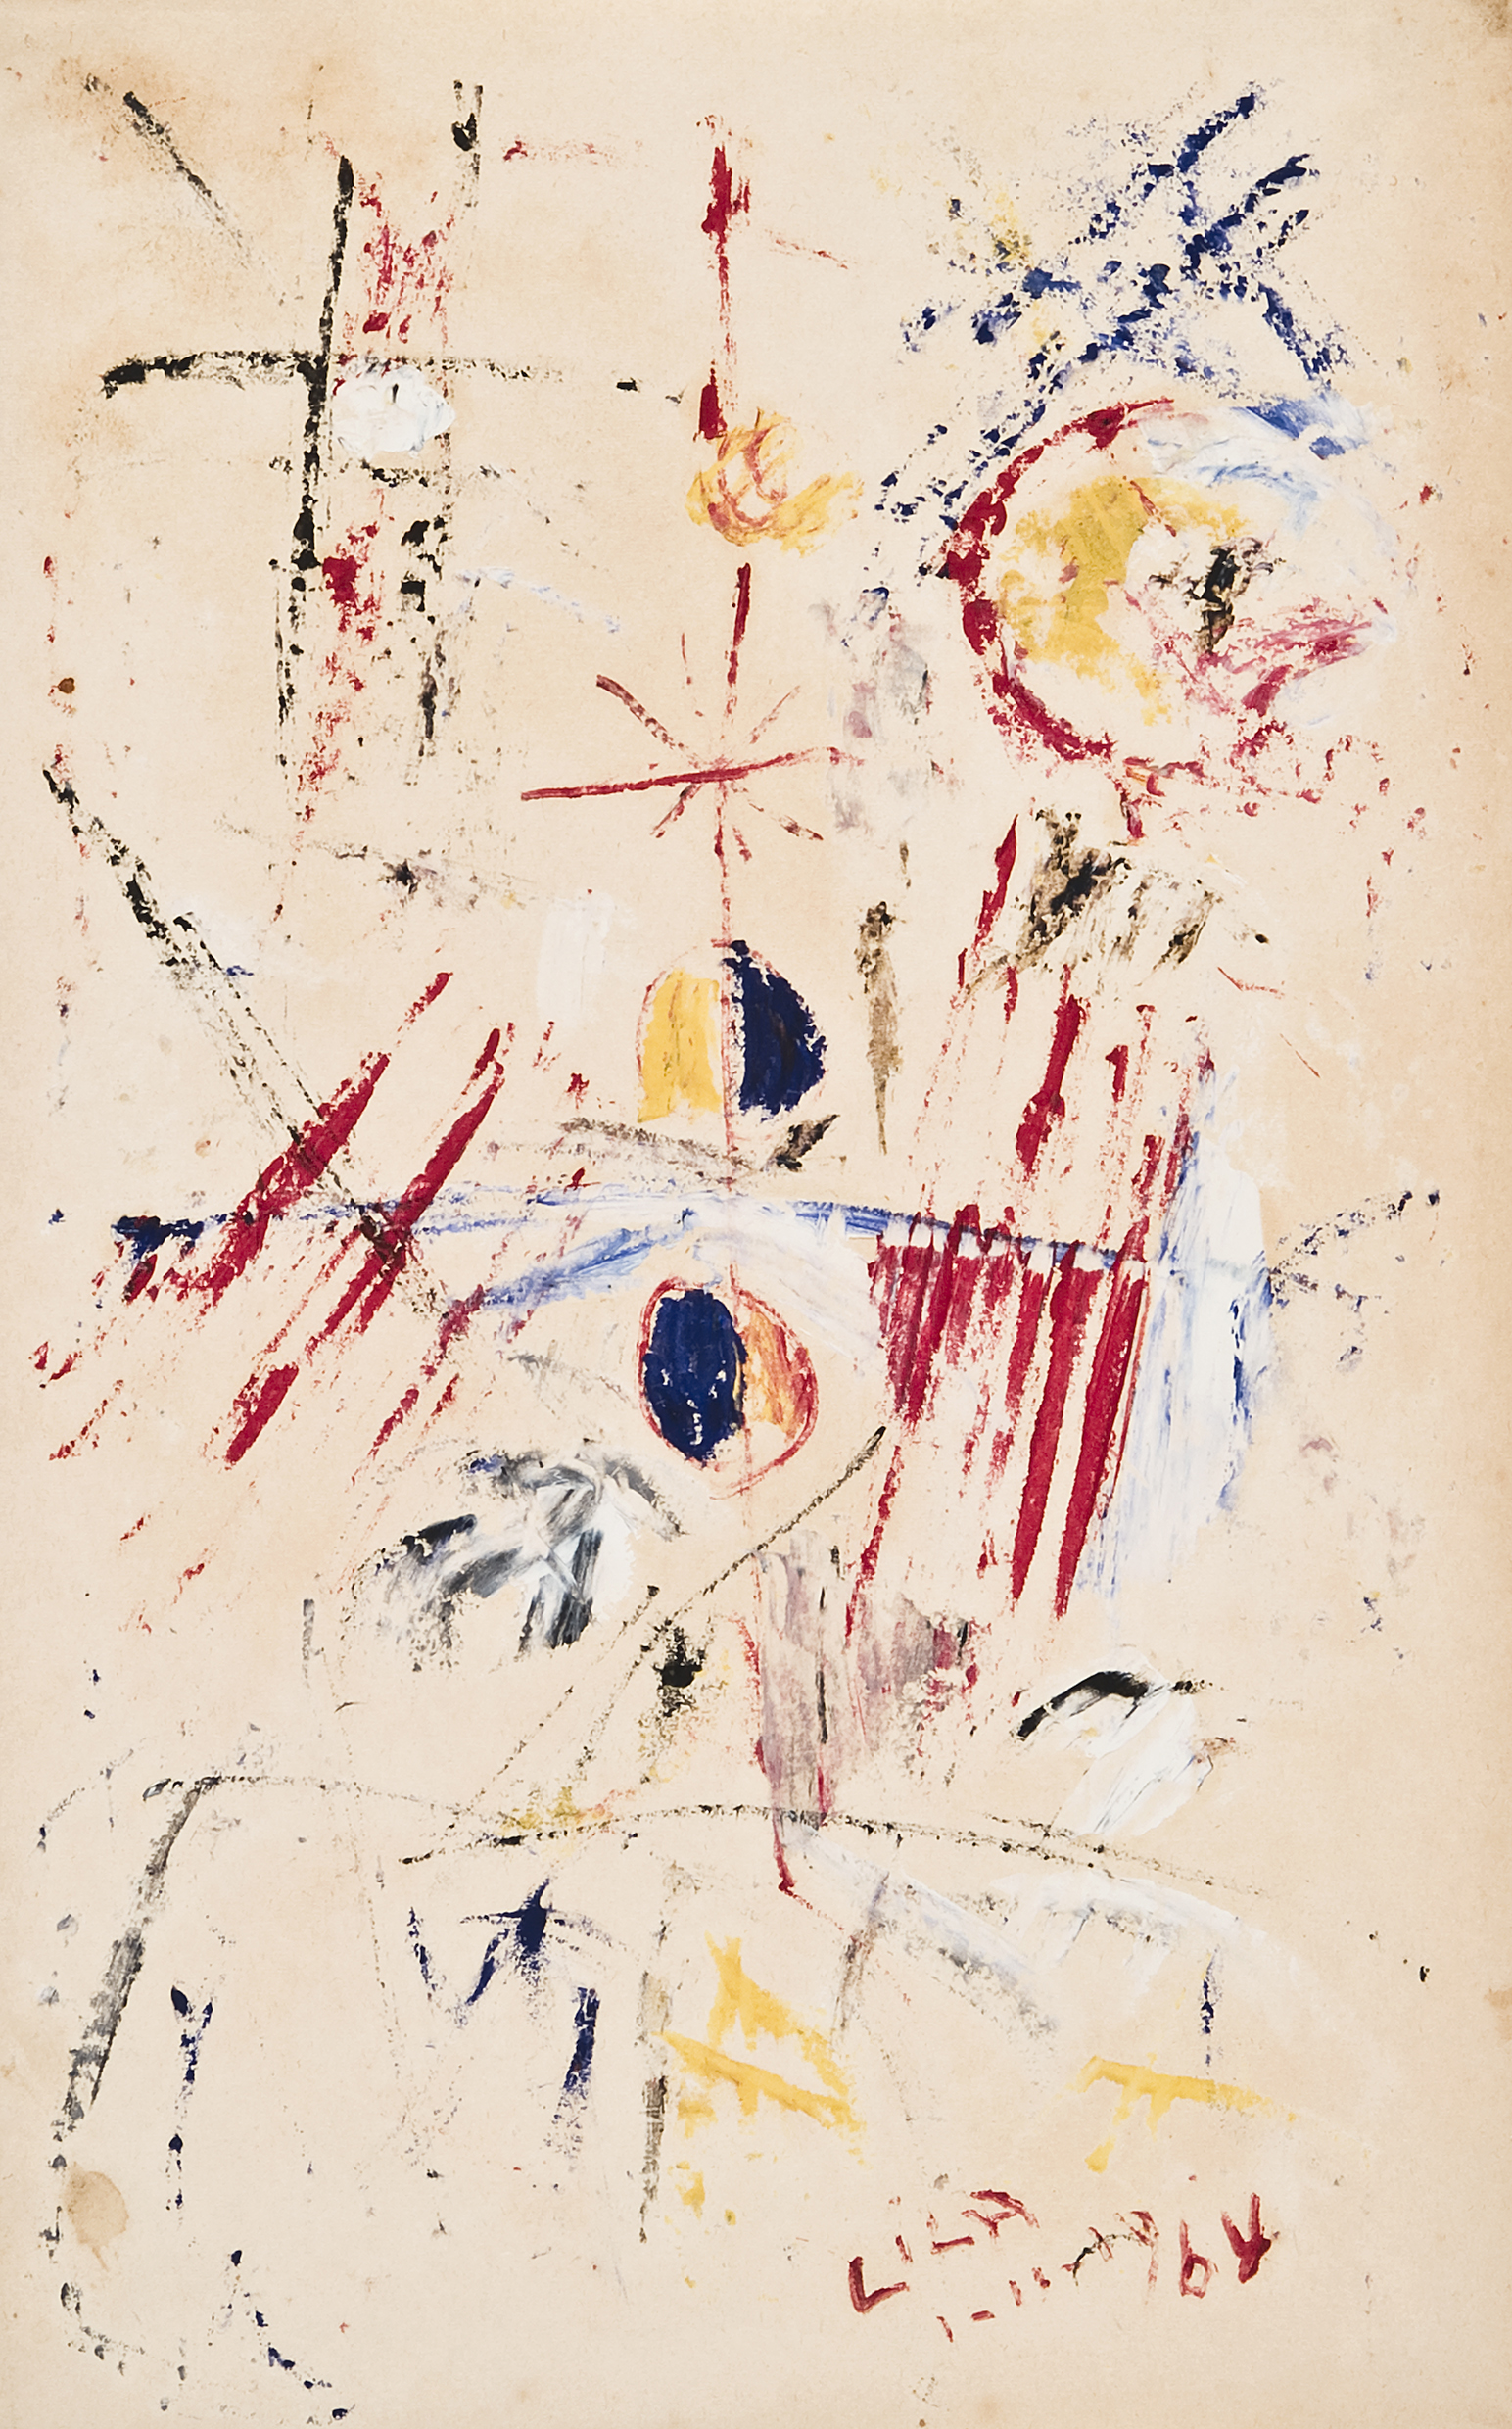 Juego con líneas y colores (1/11/1964). Óleo sobre papel, 35 x 22,5 cm.